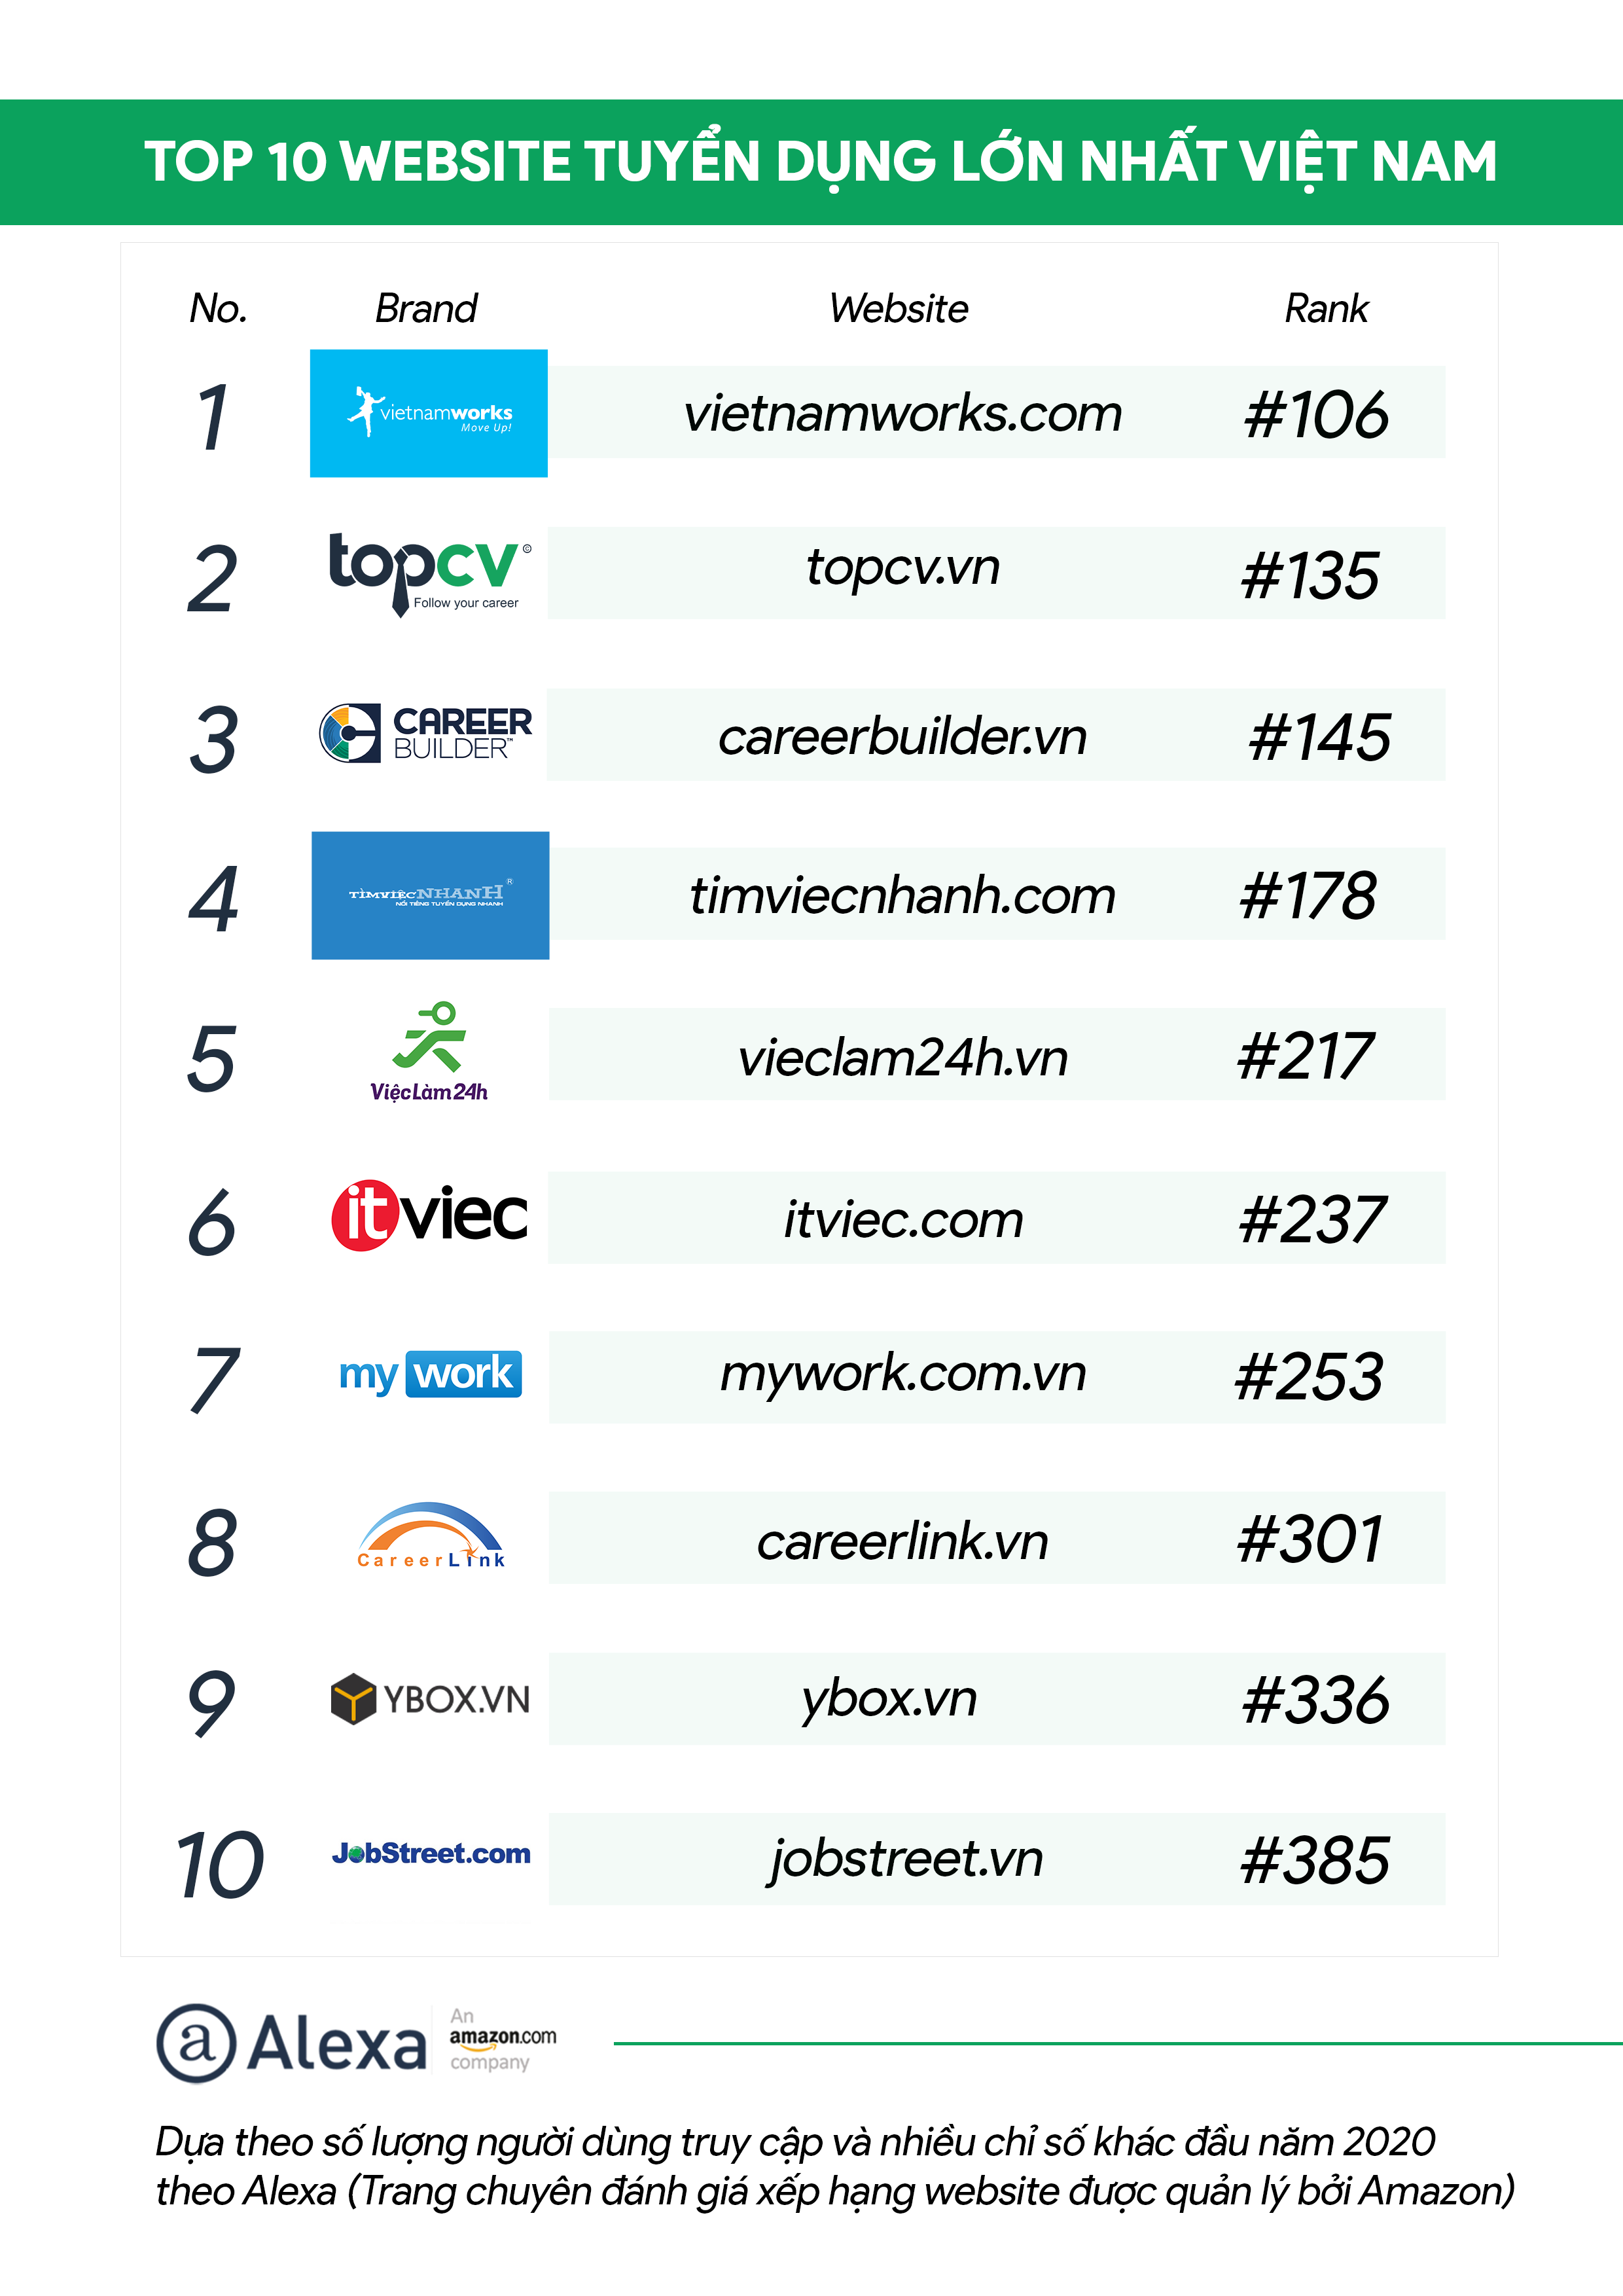 Top 10 website tuyển dụng uy tín nhất VN